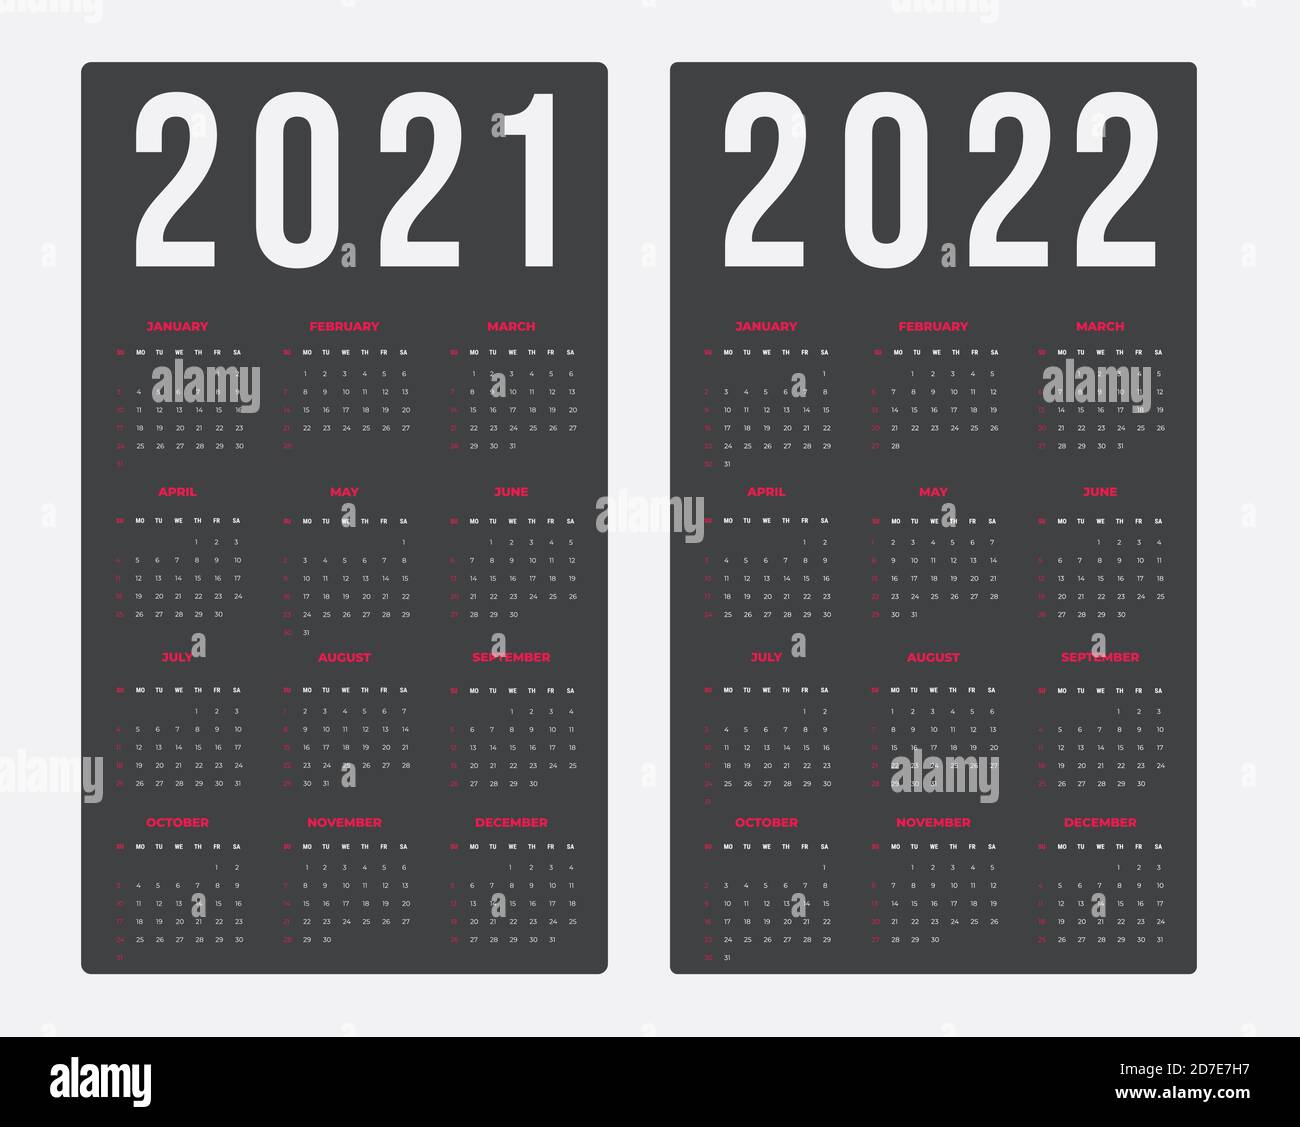 Calendario per 2021-2022 su sfondo scuro. Da domenica a lunedì, modello aziendale Illustrazione Vettoriale